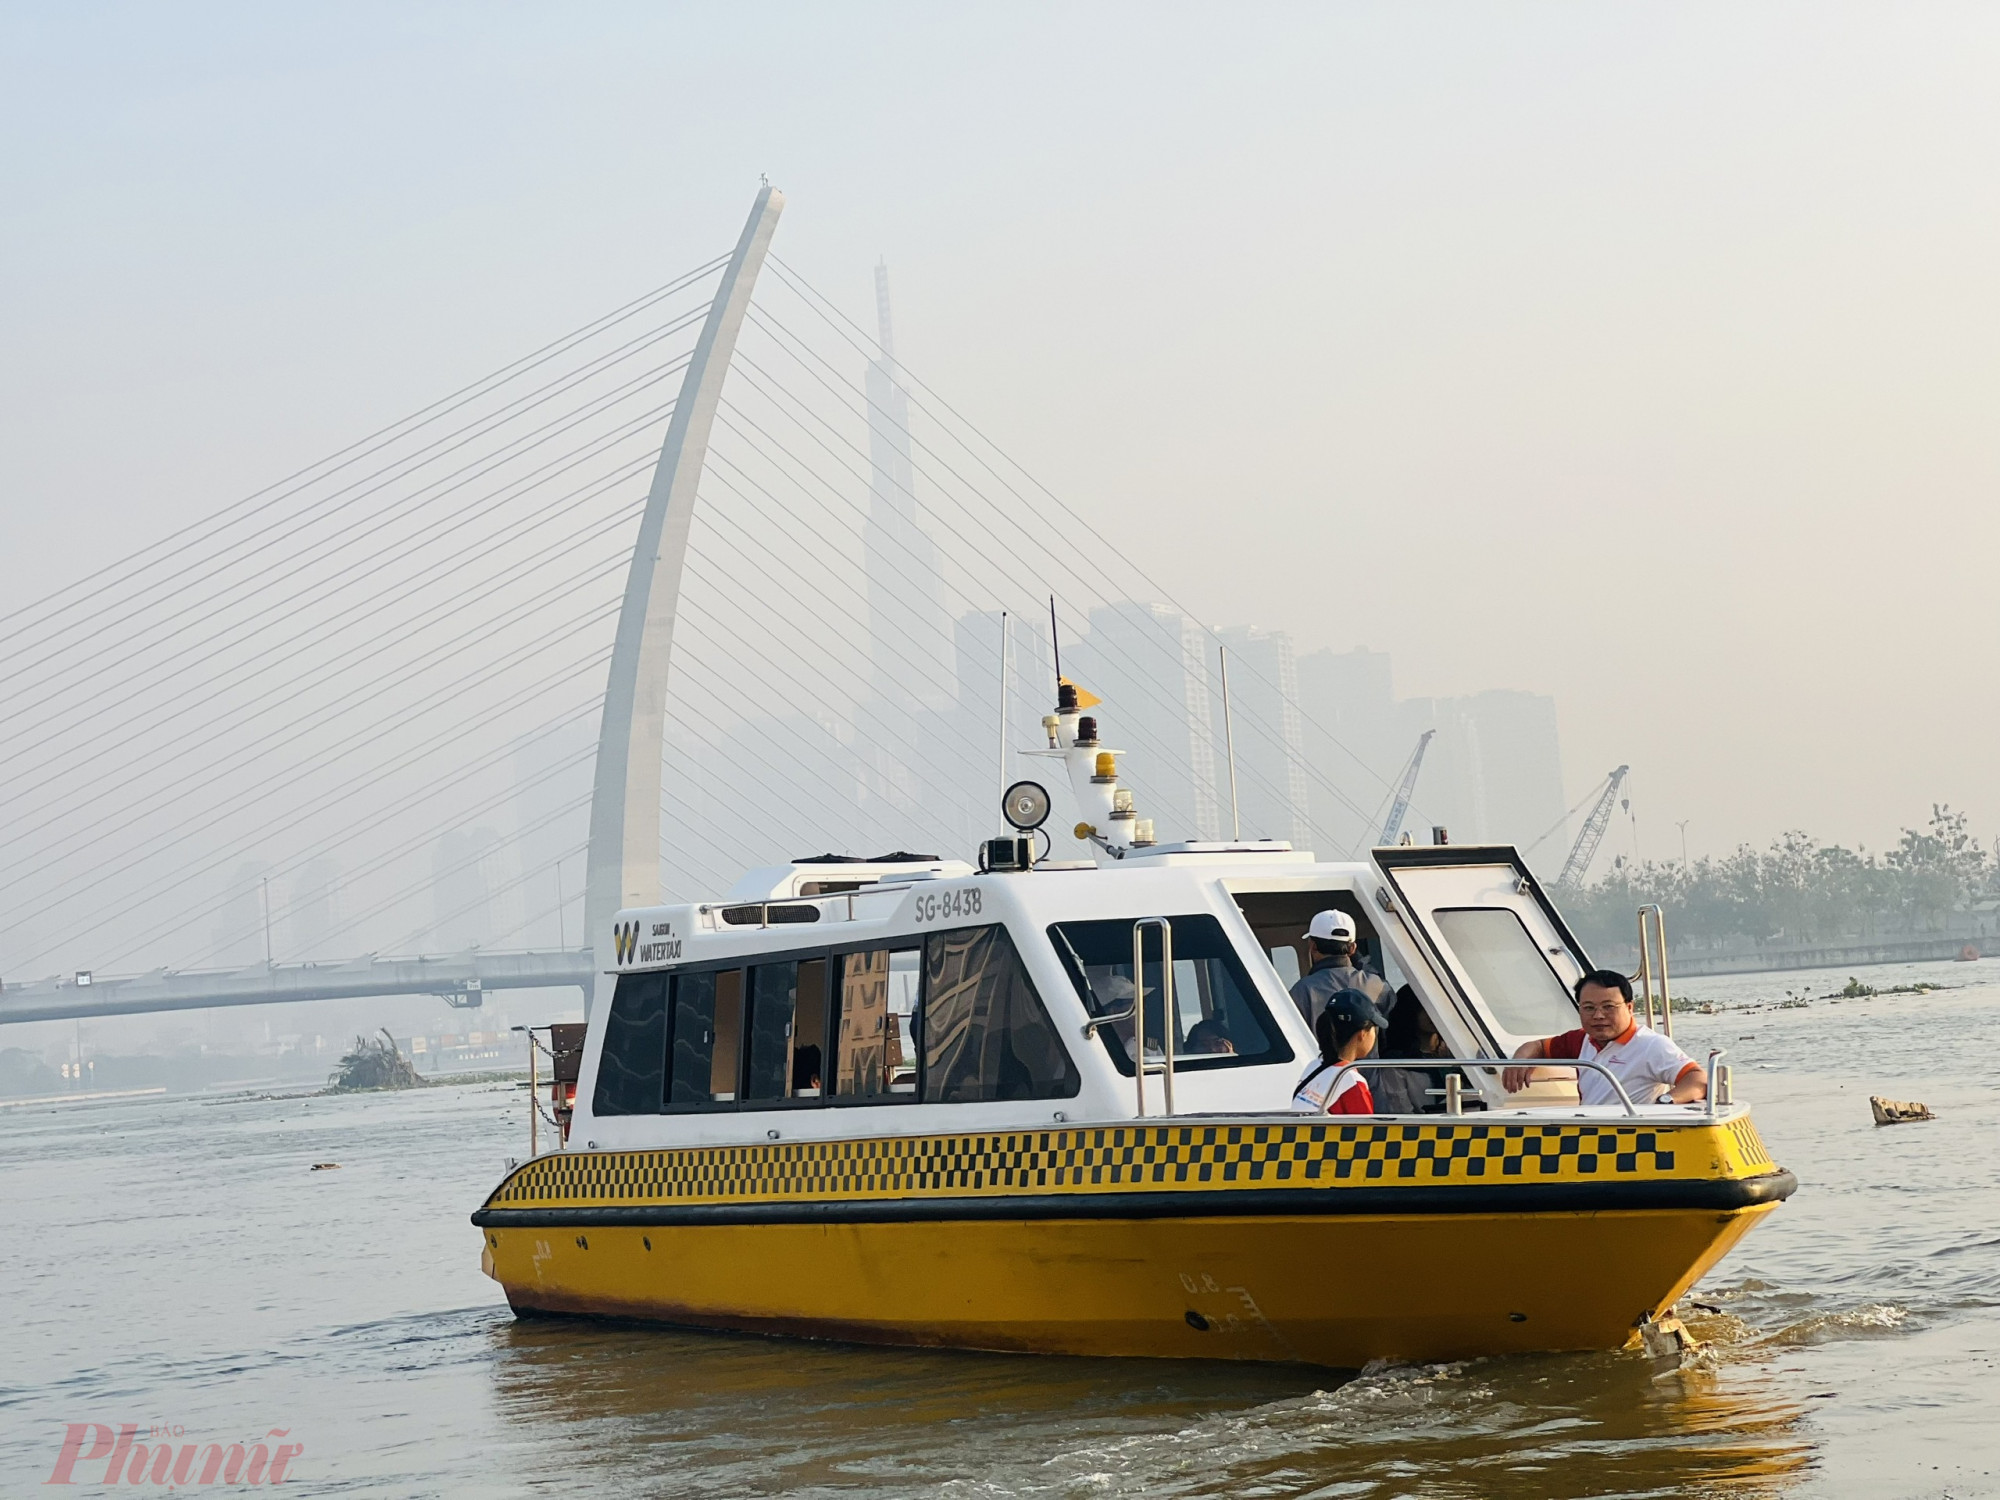 buýt trên sông độc đáo này vẫn là hoạt động du lịch được ưa chuộng trên sông Sài Gòn.